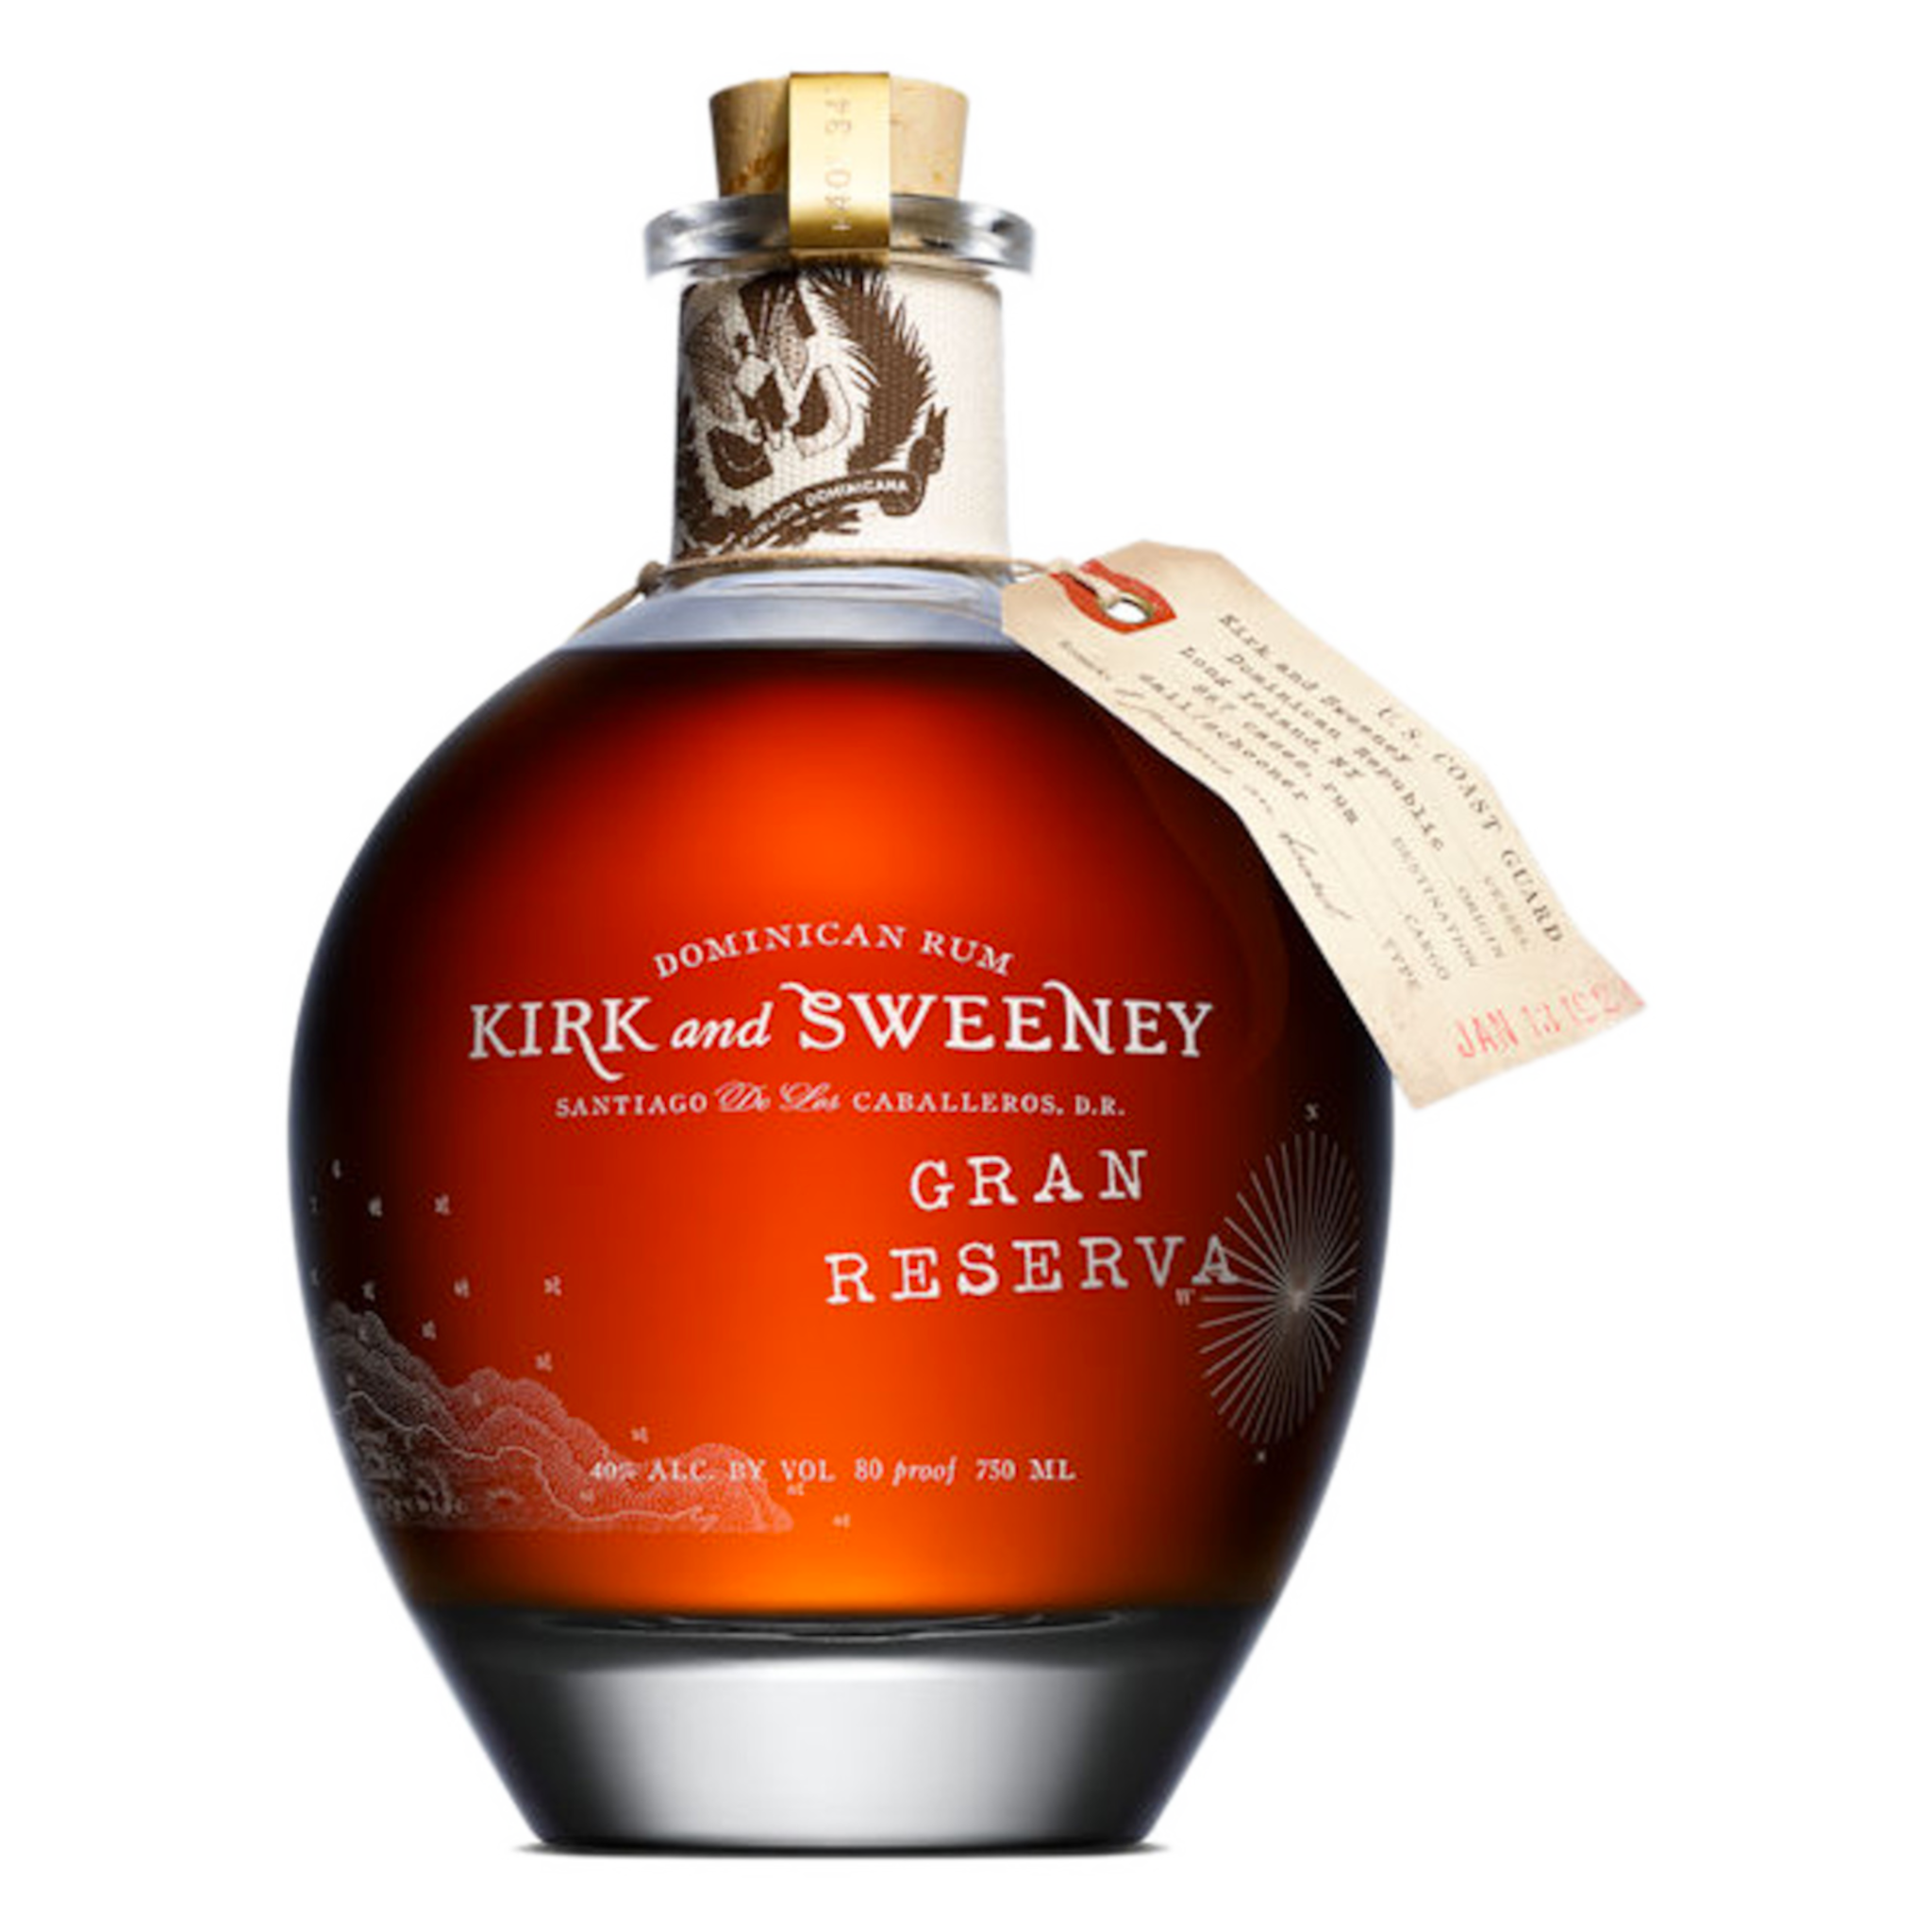 Kirk and Sweeney Gran Reserva Dominican Rum